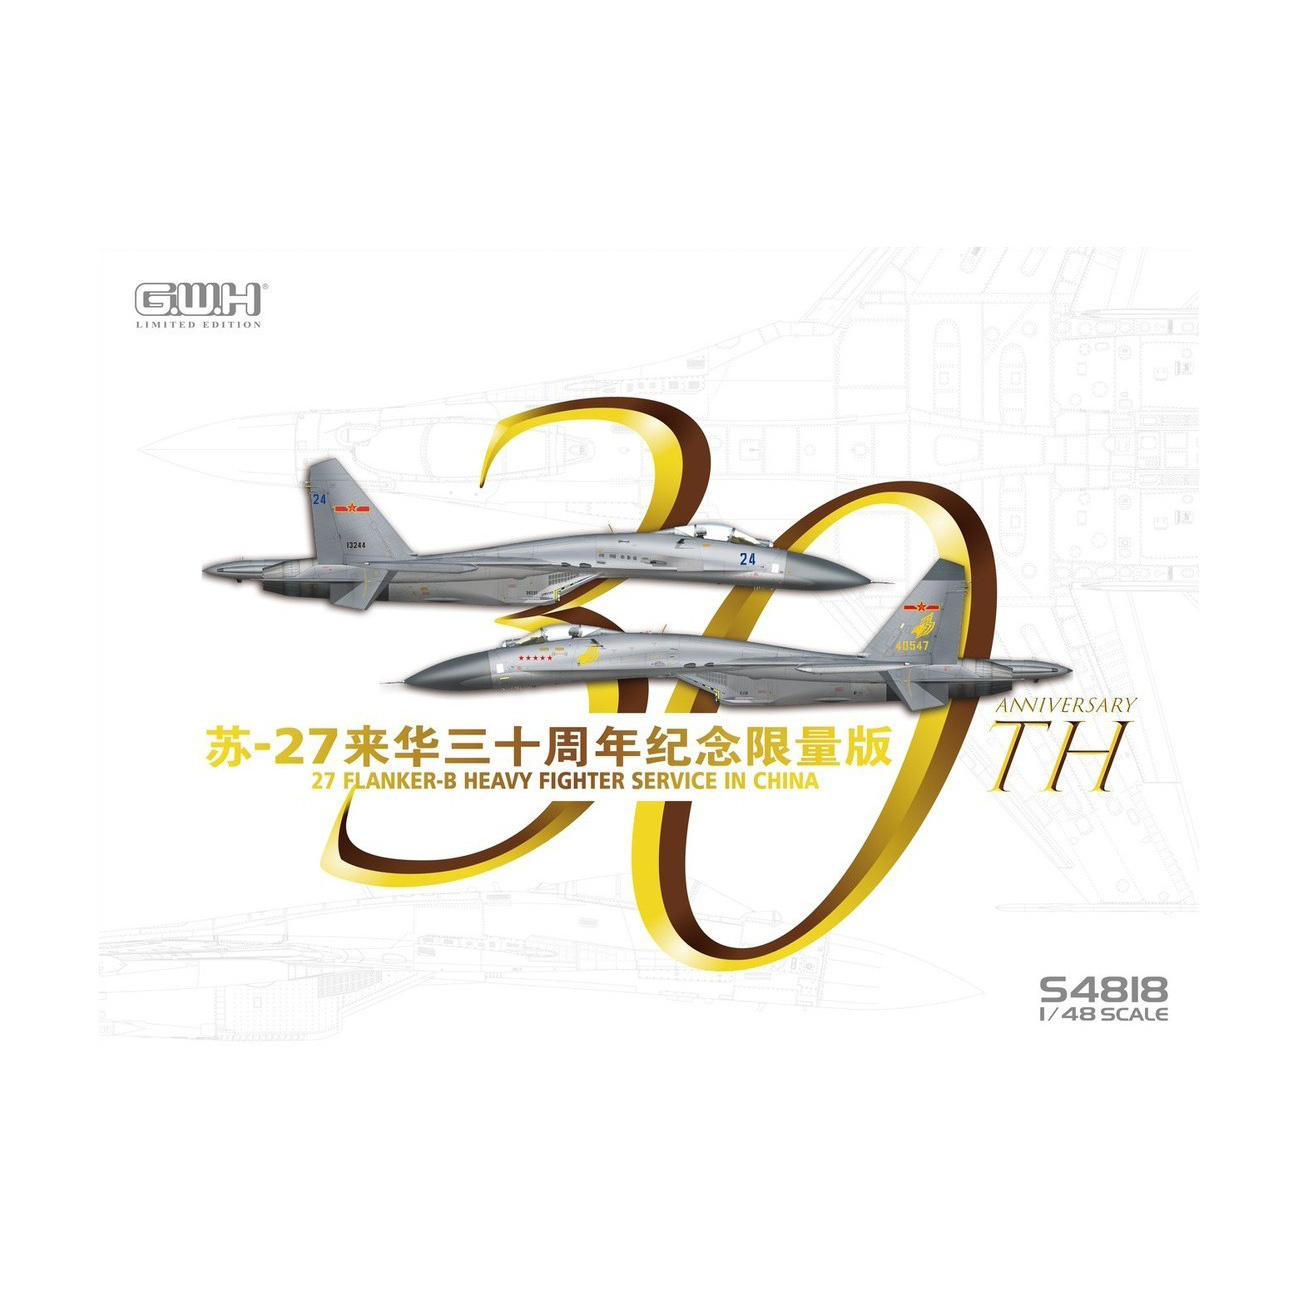 S4818 Great Wall Hobby 1/48 Истребитель Суххой-27 Flanker-B ВВС Китая (30 лет службы)